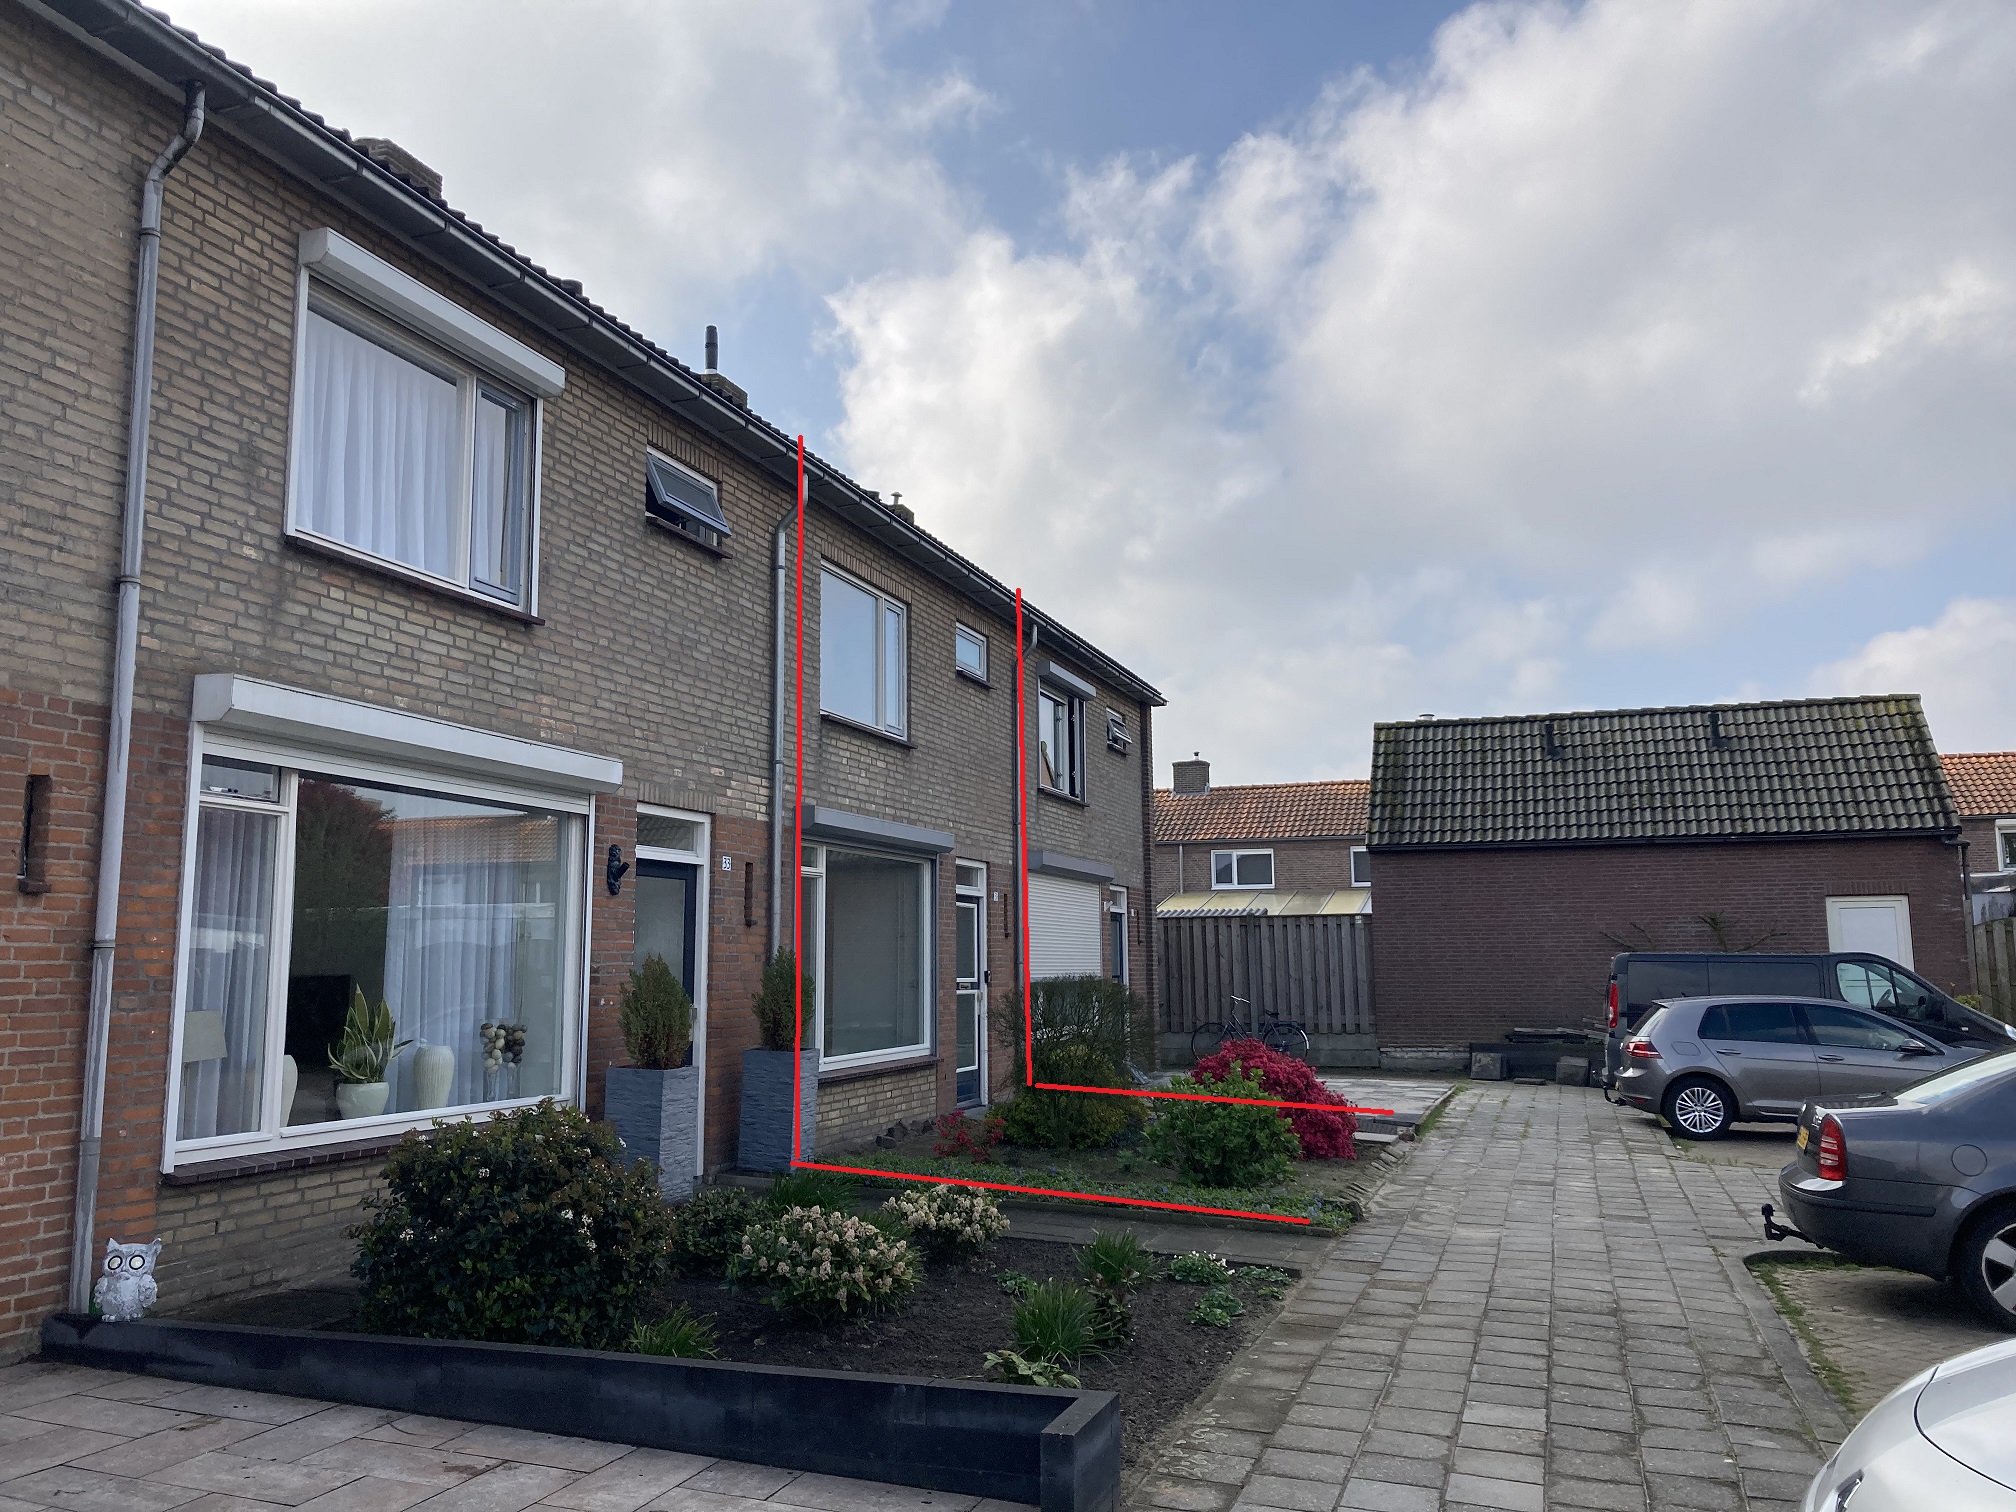 Eeckelbosstraat 31, 5051 SL Goirle, Nederland